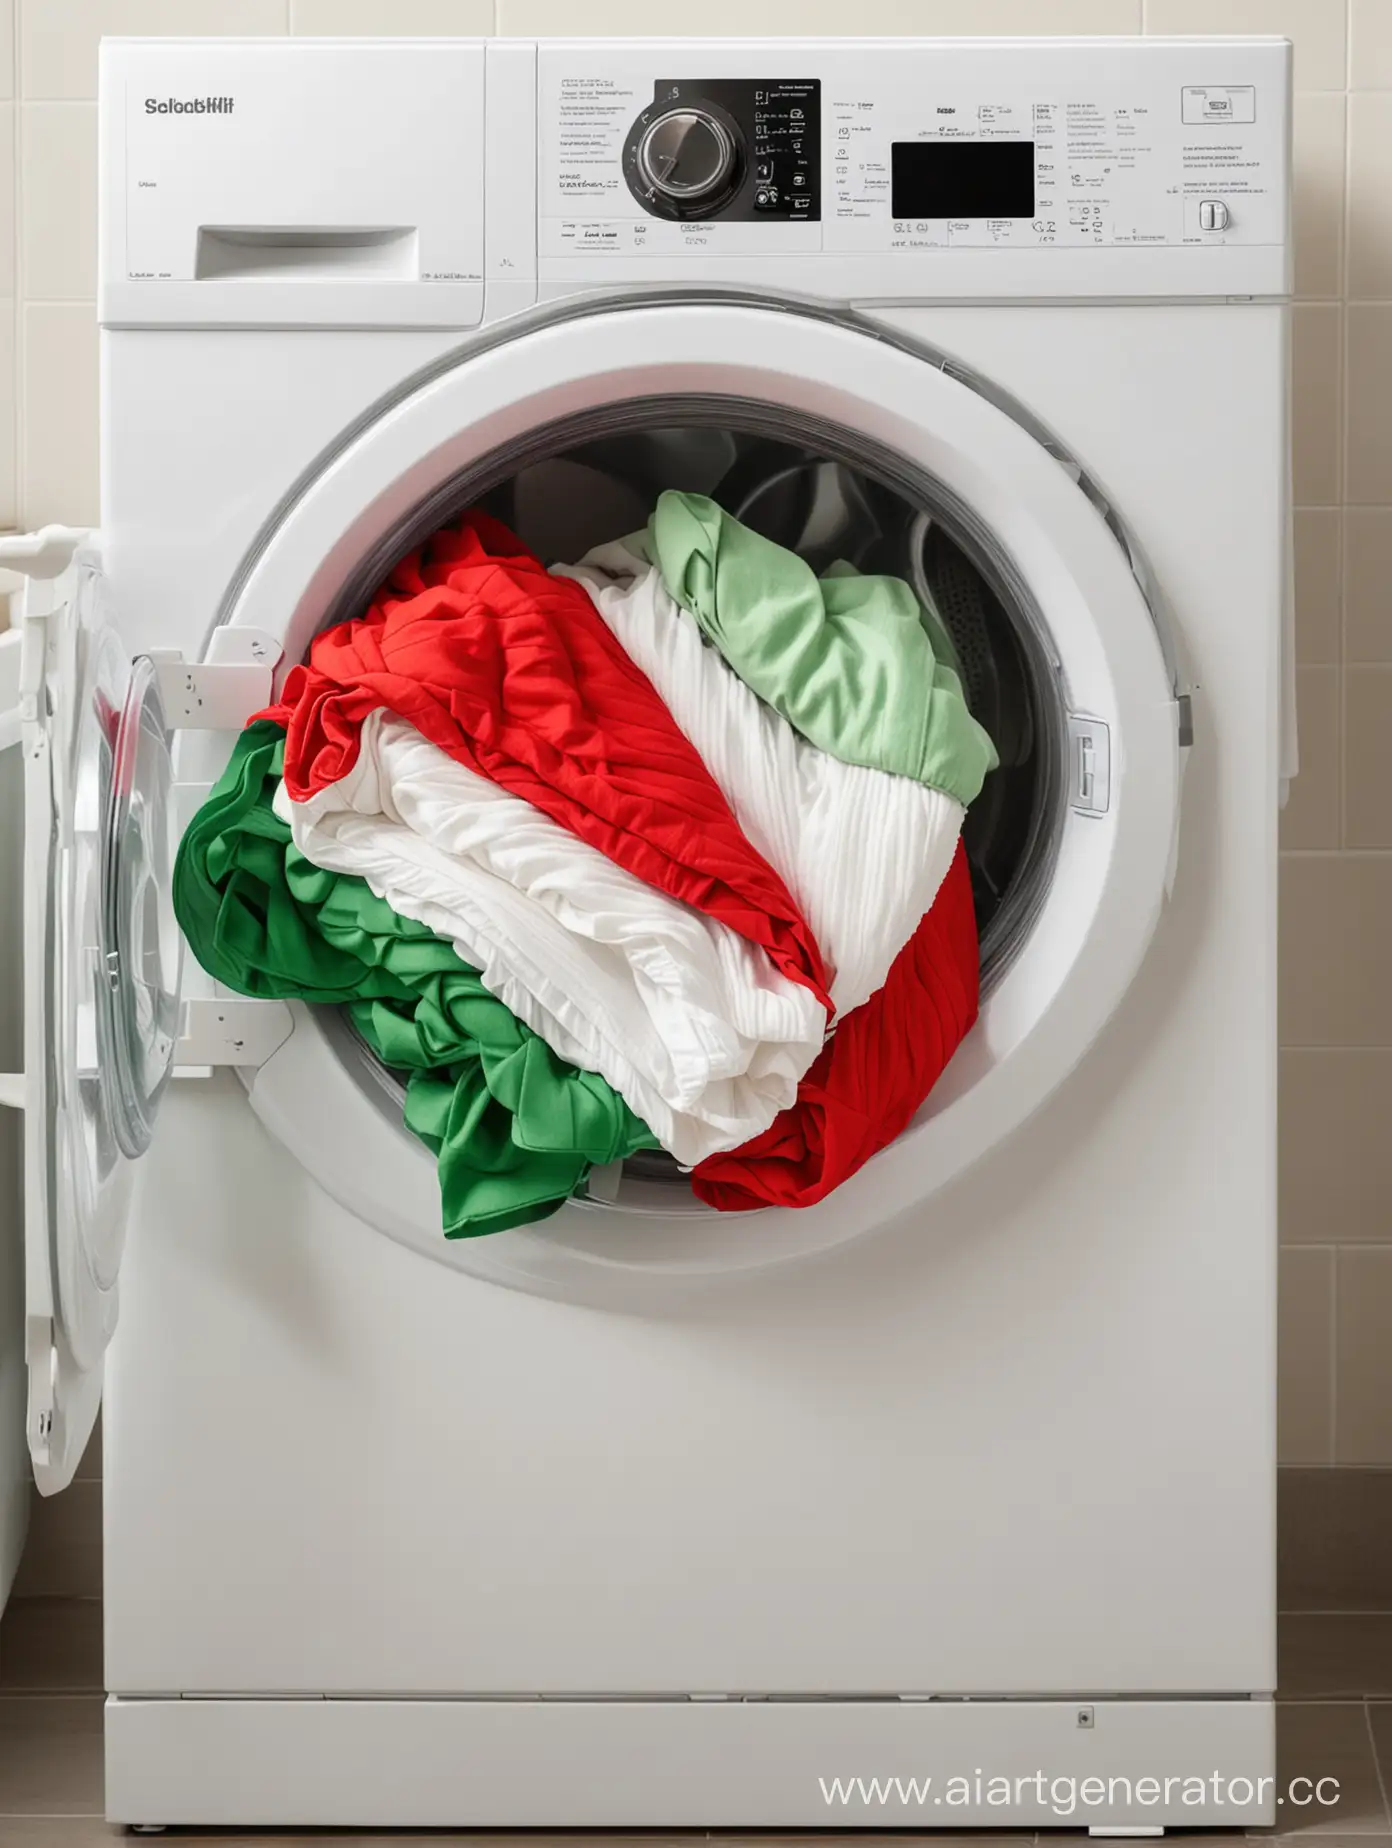 сложенные вещи красного, белого и зеленого цвета лежат на стиральной машине в ванной комнате светлых оттенков